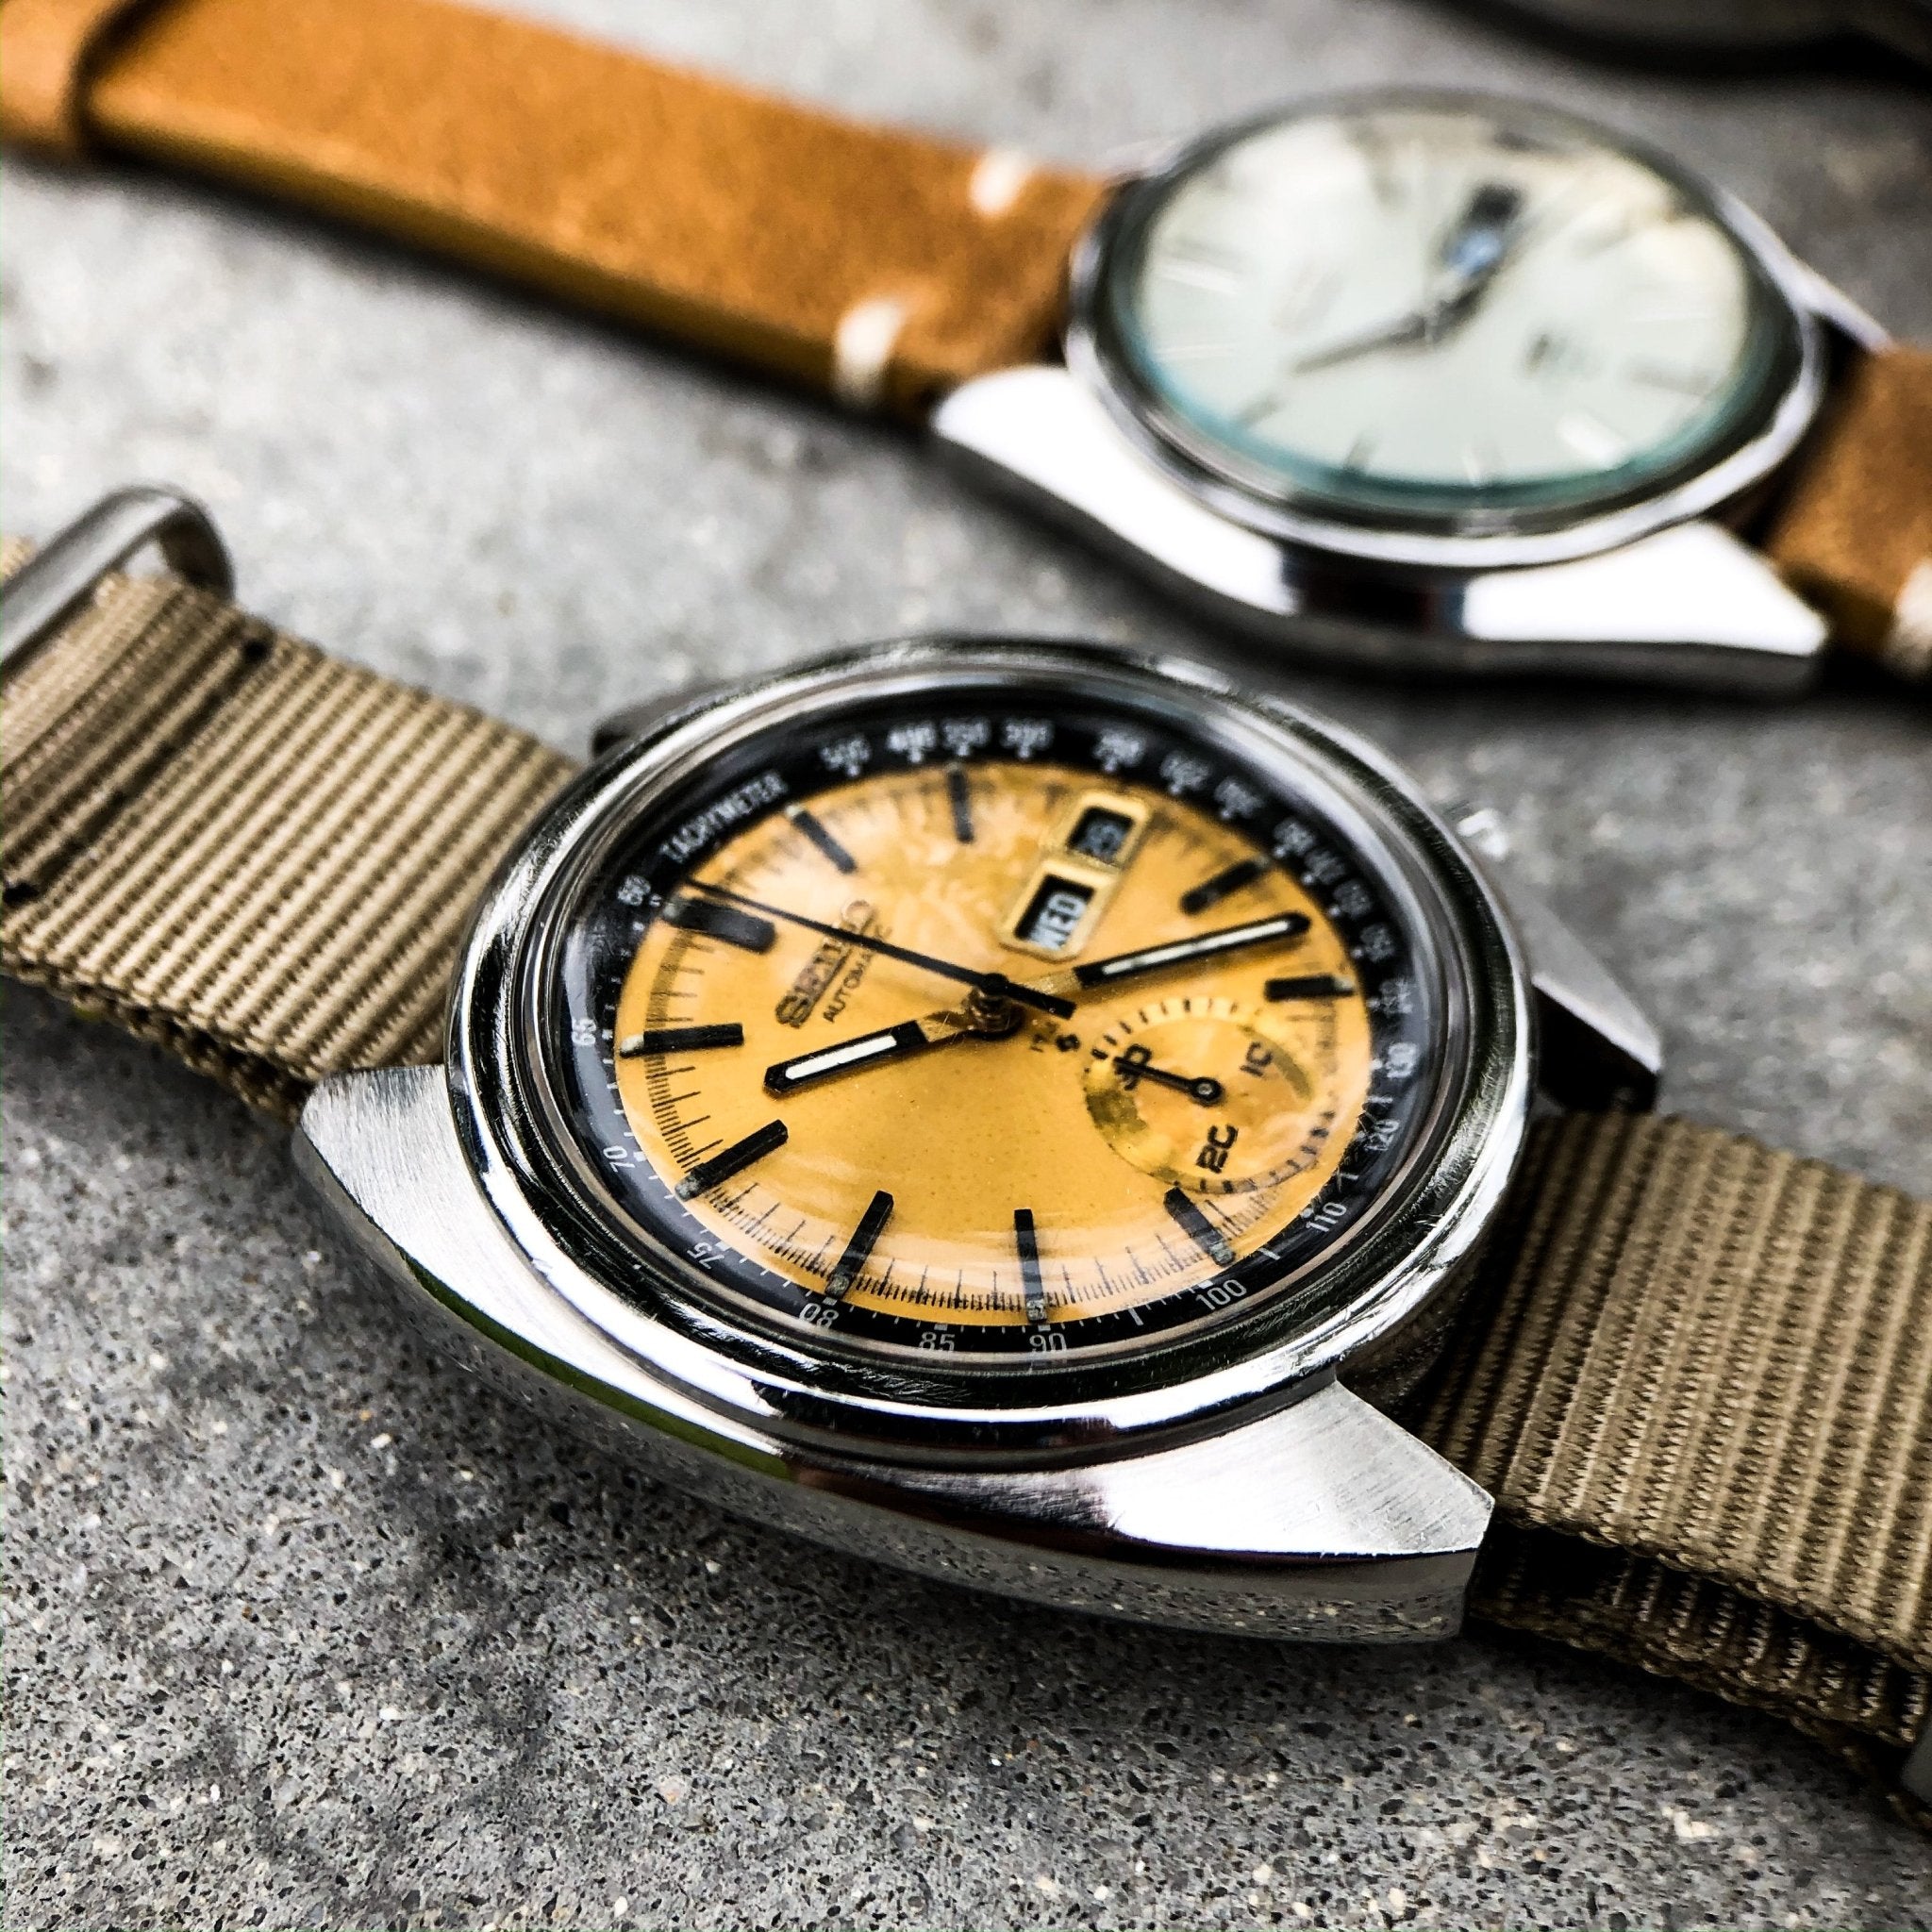 Vintage Watch | Seiko 6139 - 6013 - Samurai Vintage Co.